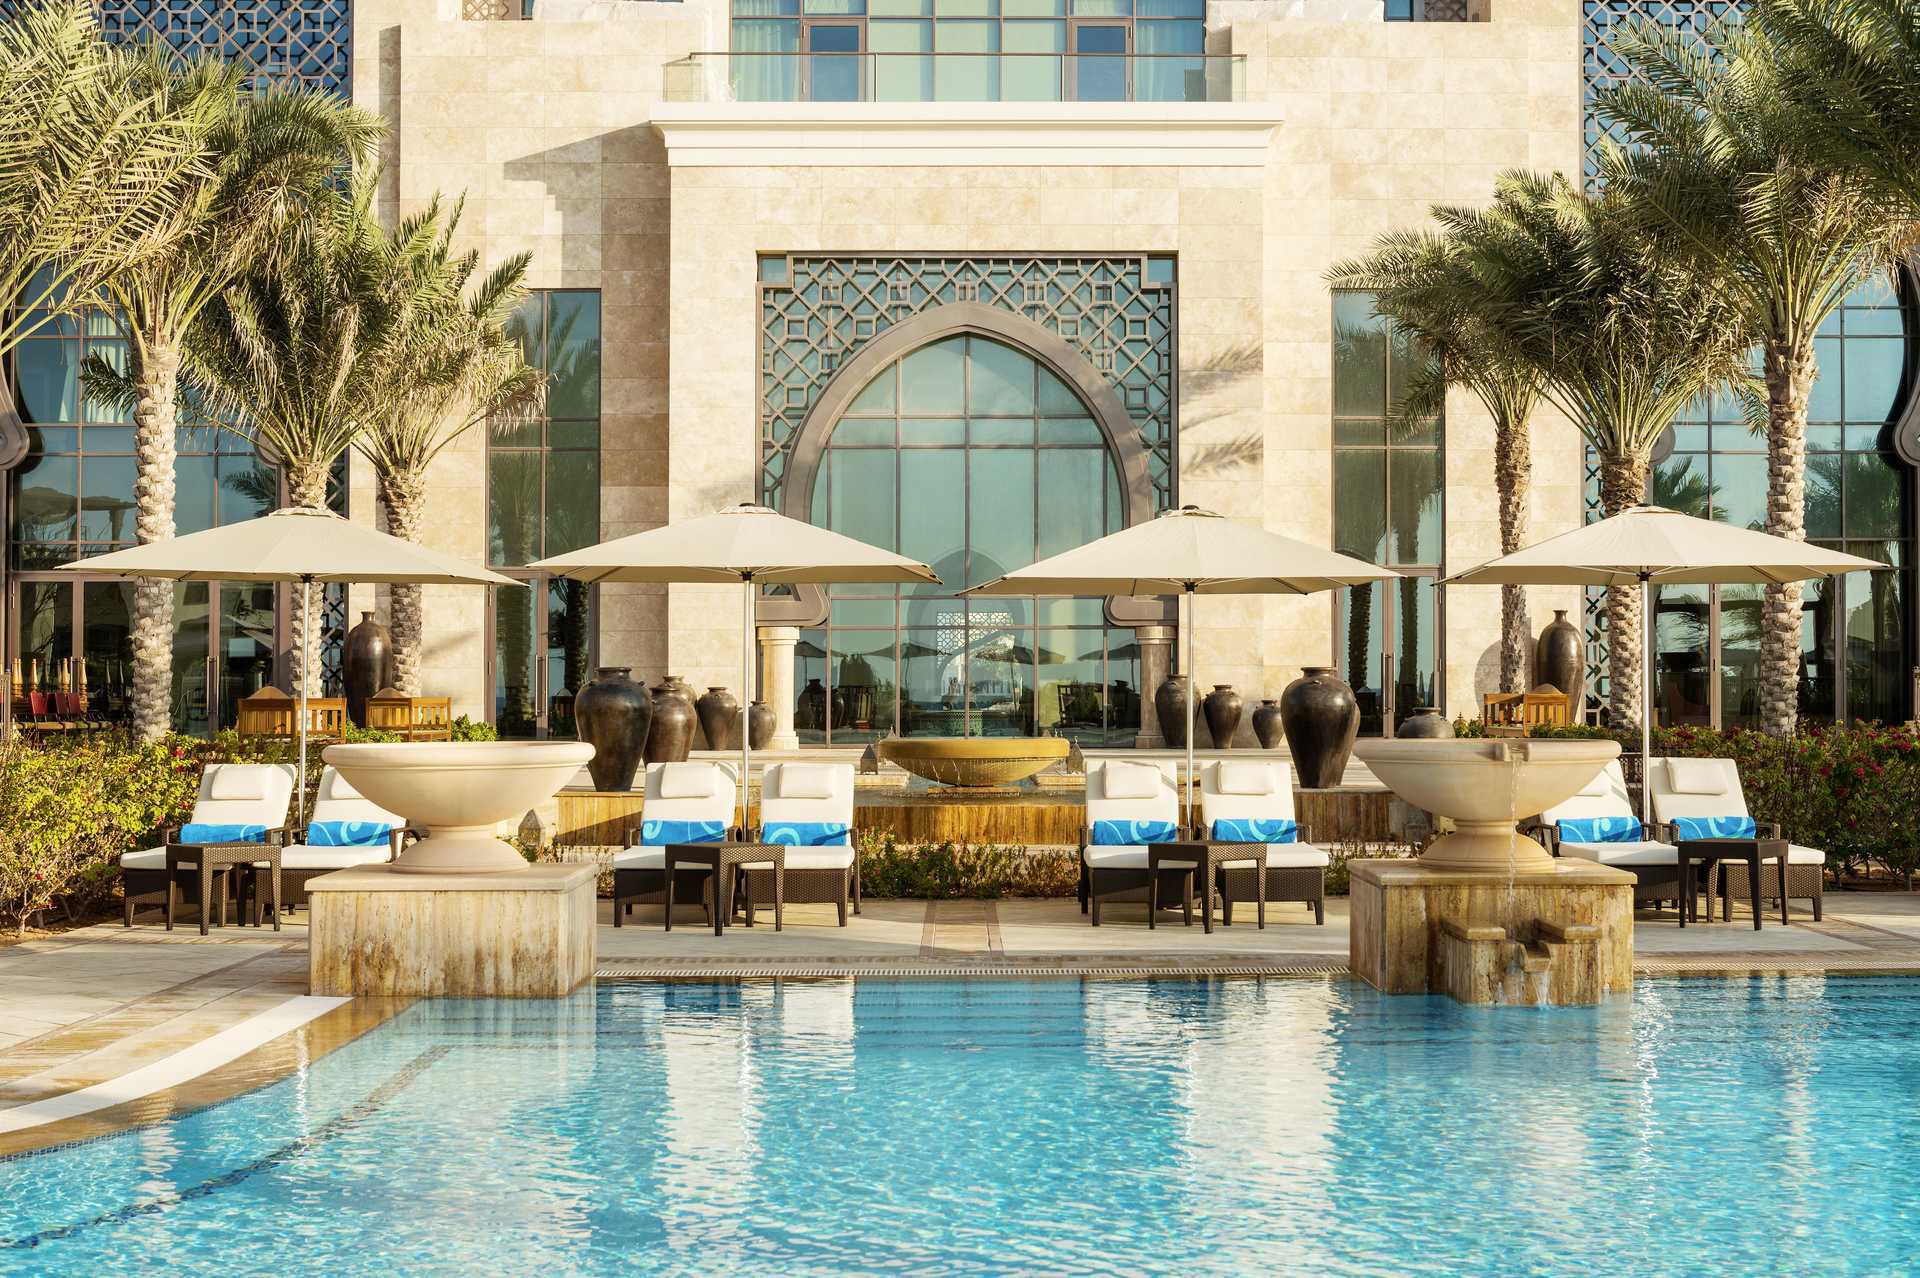 Finn ditt hotell i De forente arabiske emirater